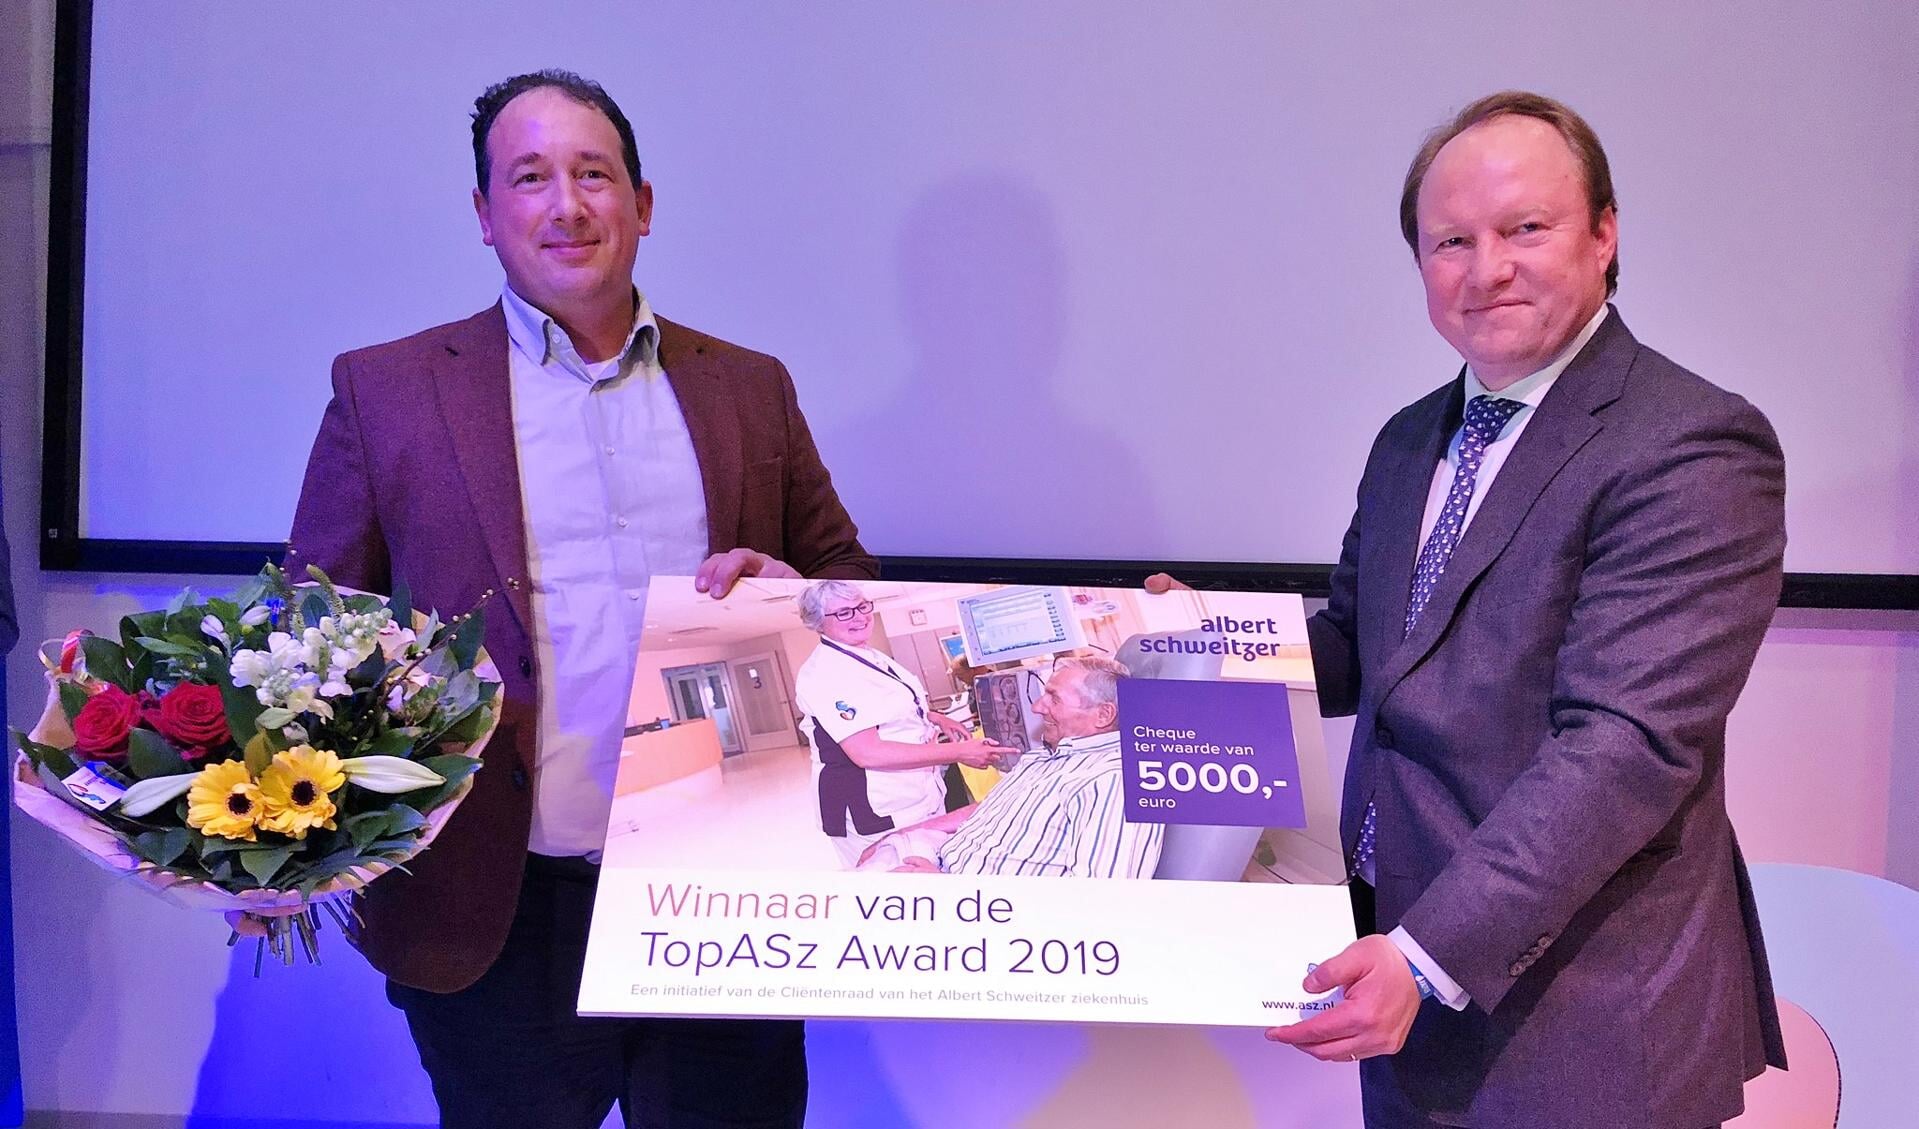 Internist-hematoloog Peter Westerweel (links) kreeg de prijs uit handen van burgemeester Van der Loo van Zwijndrecht.